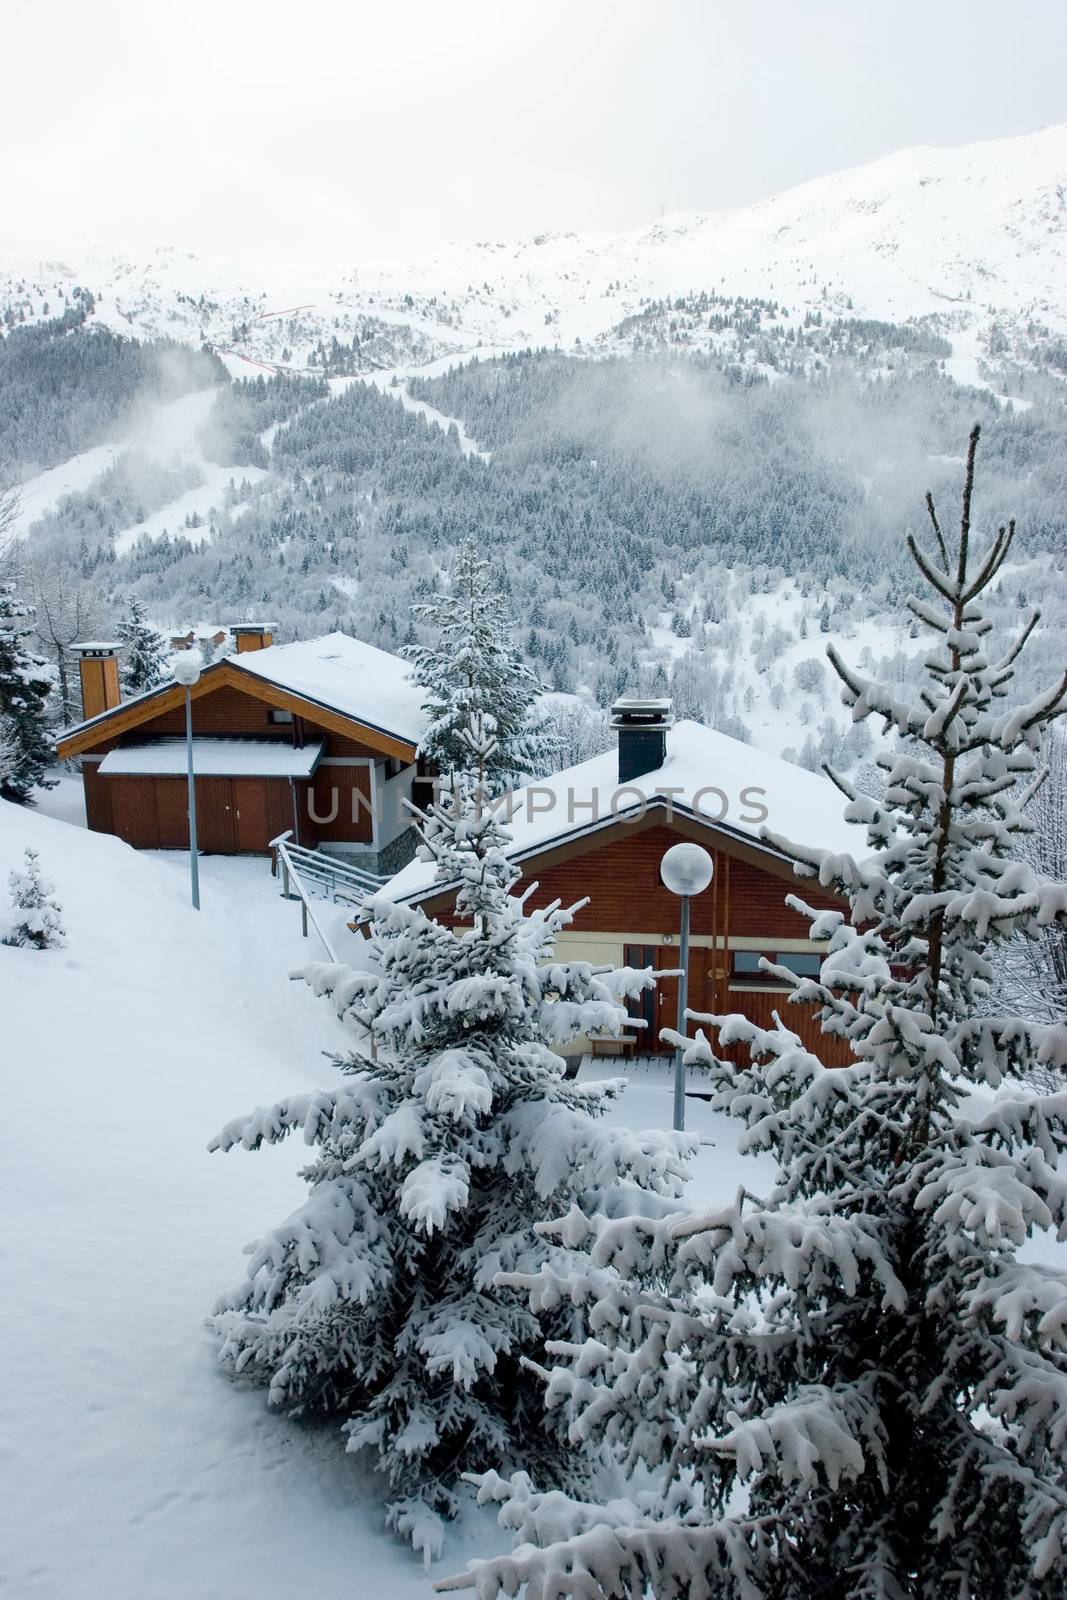 Ski resort Chalet after snow storm